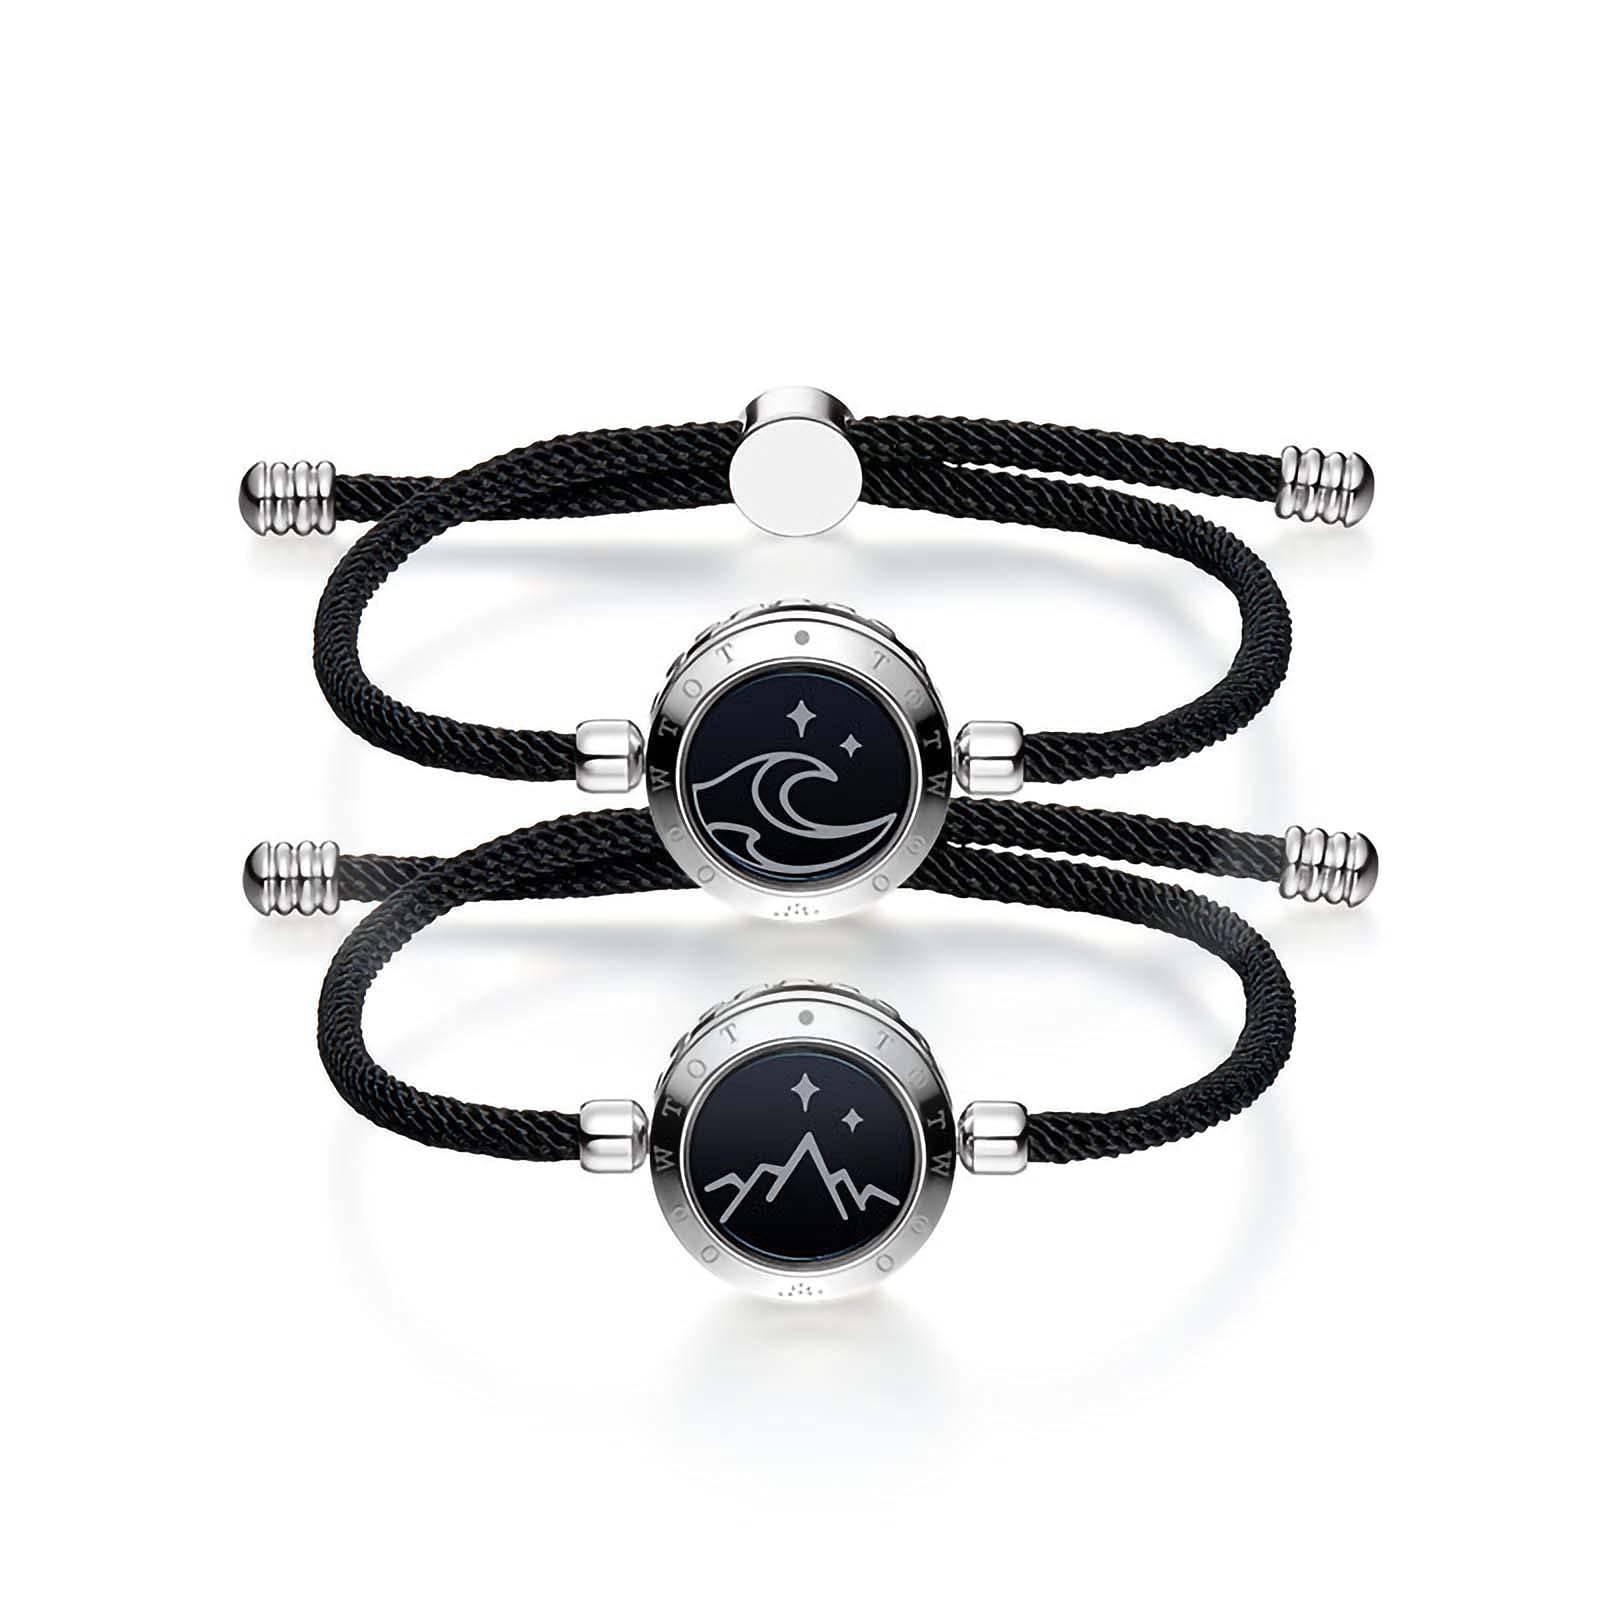 Sun & Moon Couples Bracelets – The Couples Bracelet